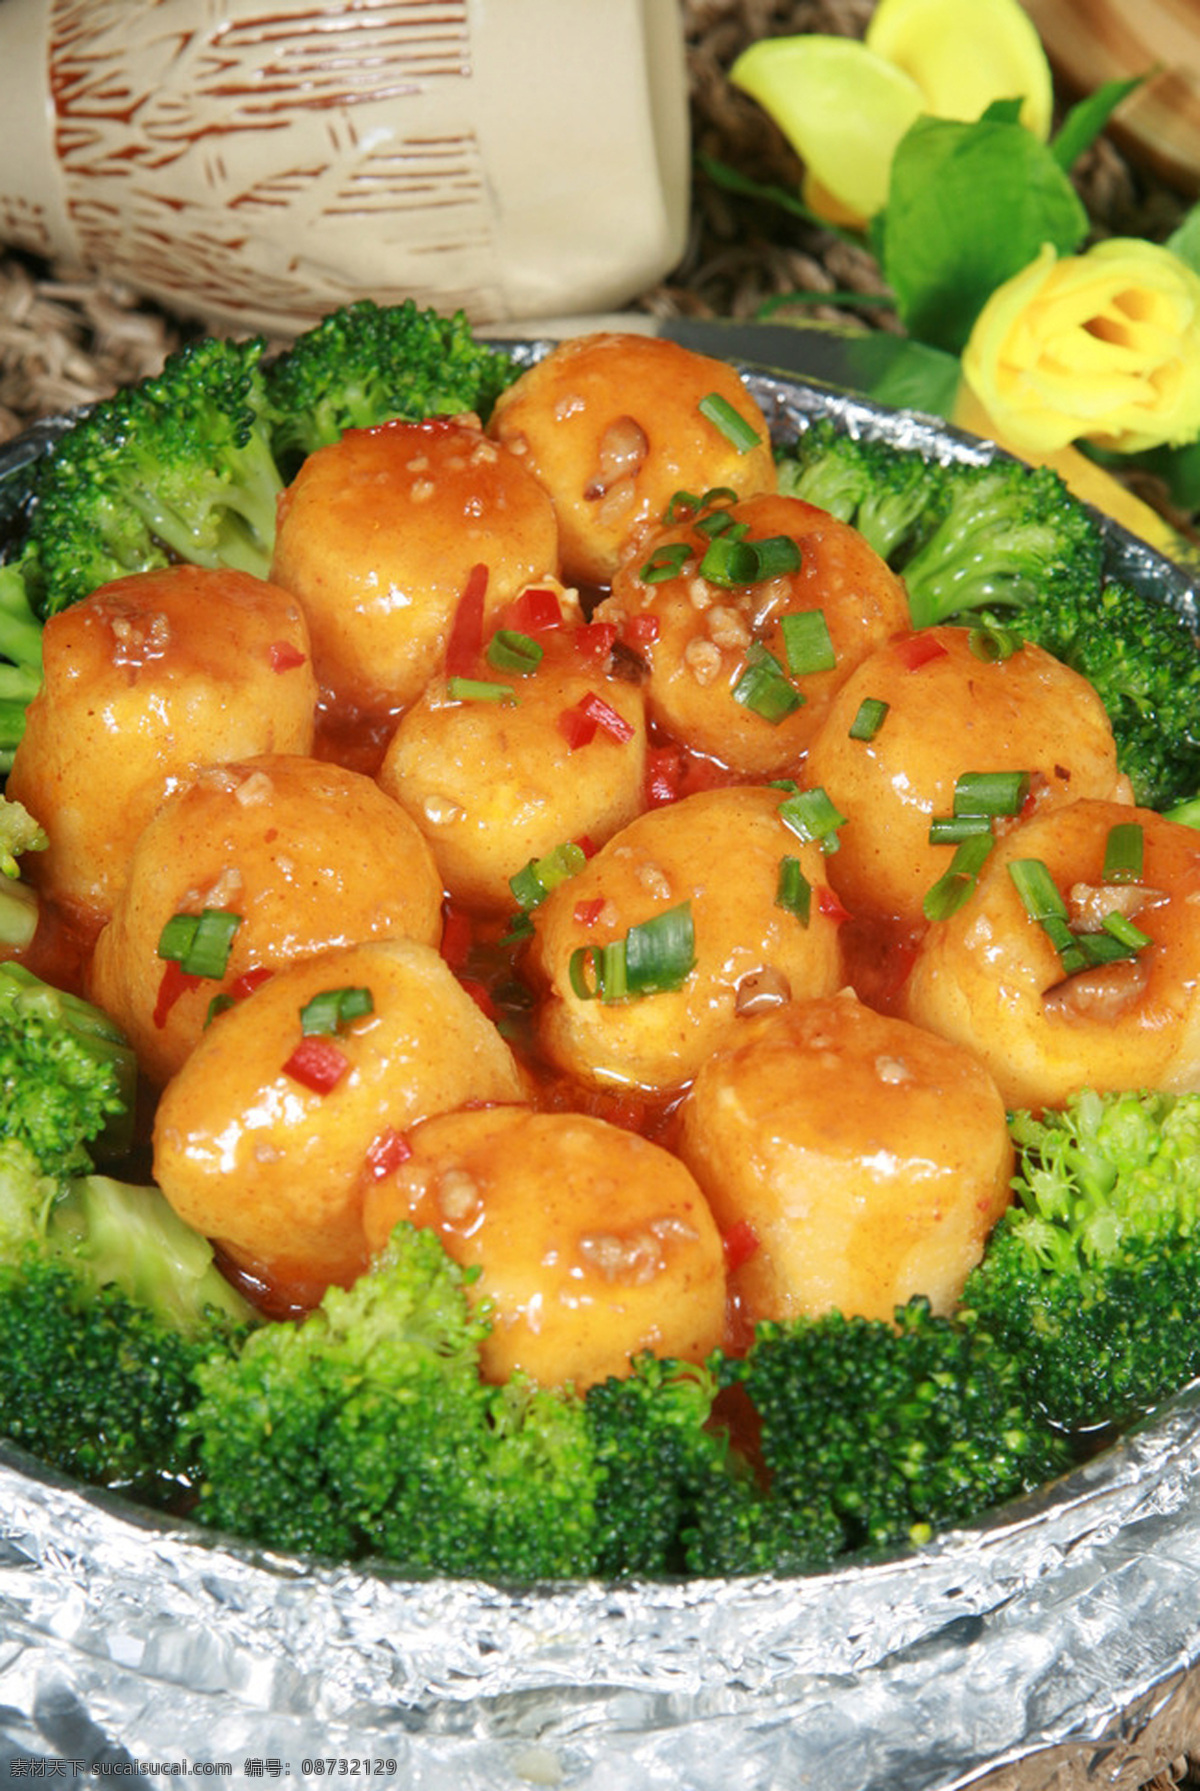 红烧日本豆腐 日本豆腐 凉拌日本豆腐 花菜日本豆腐 美食广告素材 美食 餐饮美食 传统美食